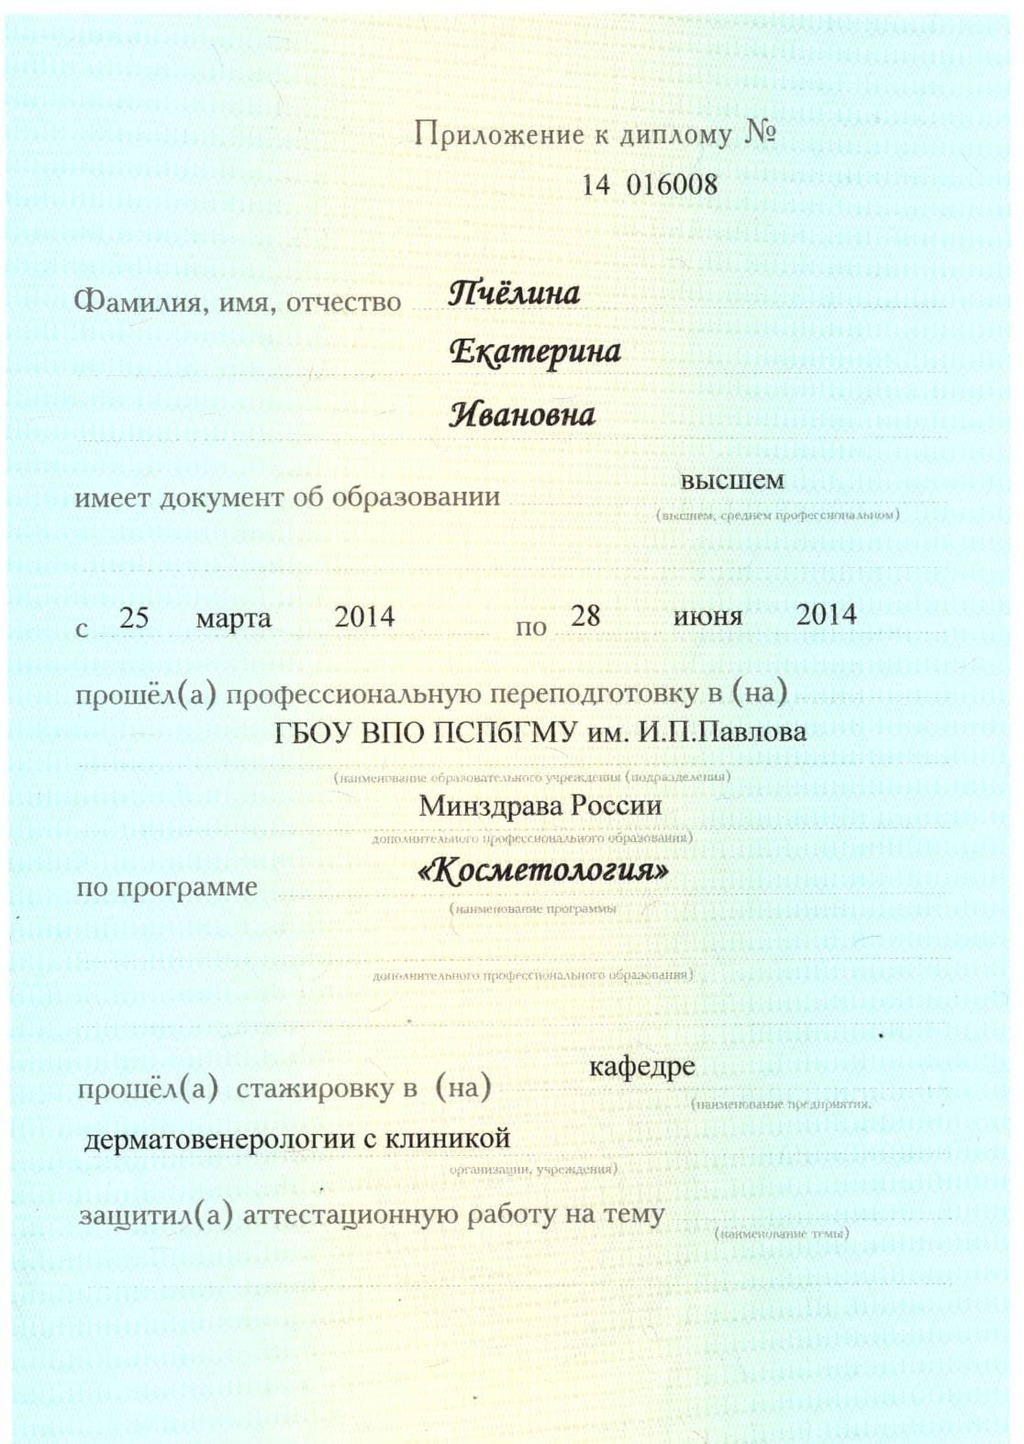 Документ подтверждающий что Екатерина Ивановна Пчелина получил(а) диплом профильного образования по специальности косметология